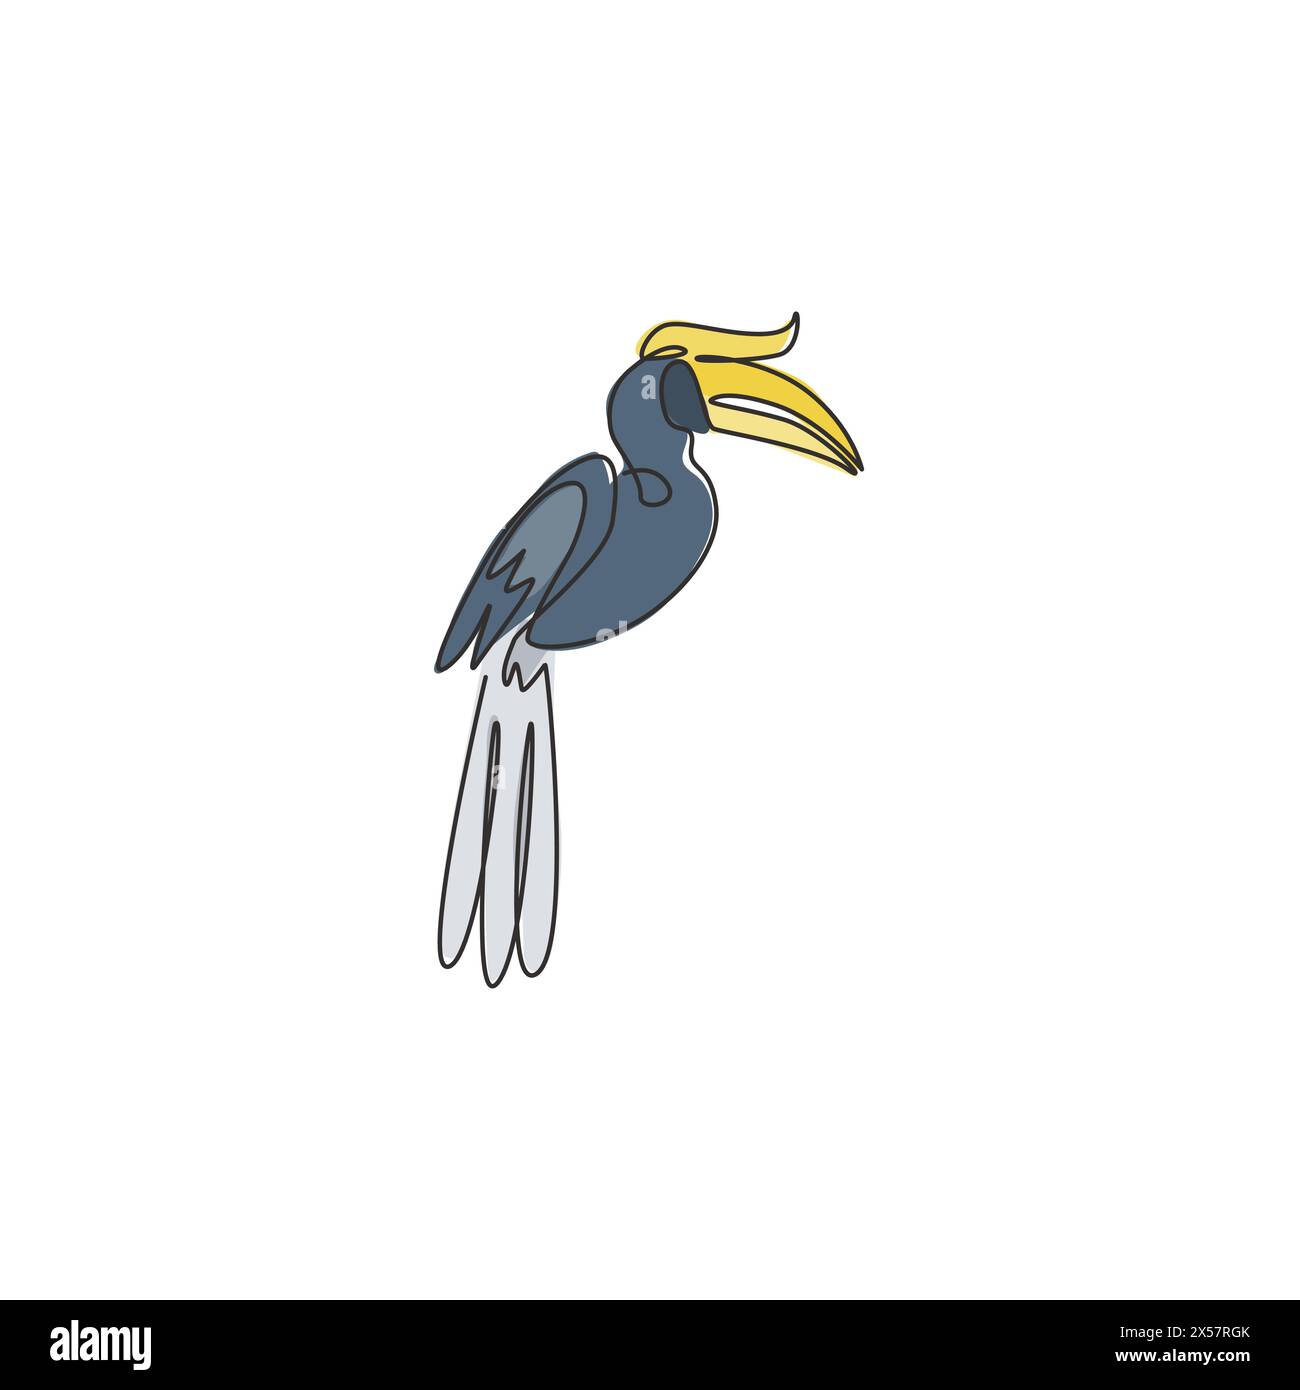 Un dessin de ligne continue de grand hornbill mignon pour l'identité du logo de l'entreprise. Concept de mascotte d'oiseau à bec large pour l'icône du parc national de conservation. Mode Illustration de Vecteur